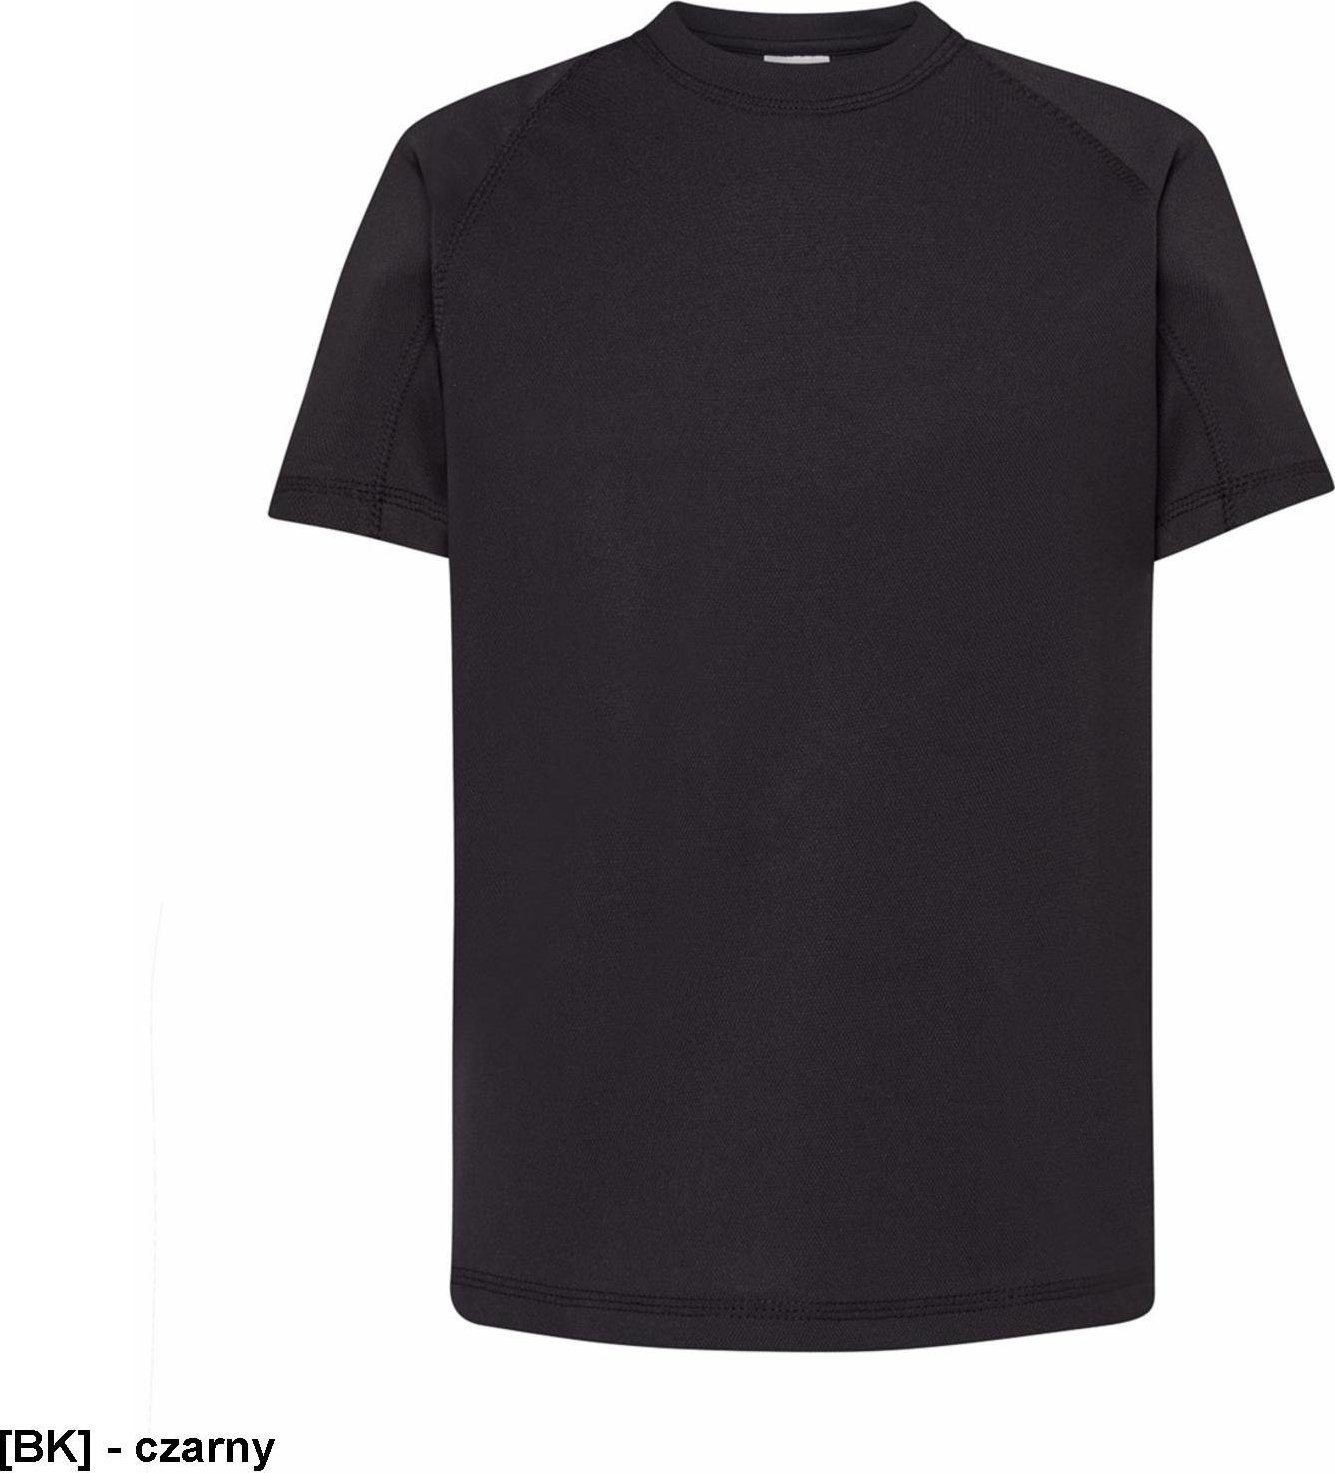 JHK TSRKSPOR SPORT KID - T-shirt dziecięcy z krótkim rękawem - czarny - wzrost 110-152cm. 12-14